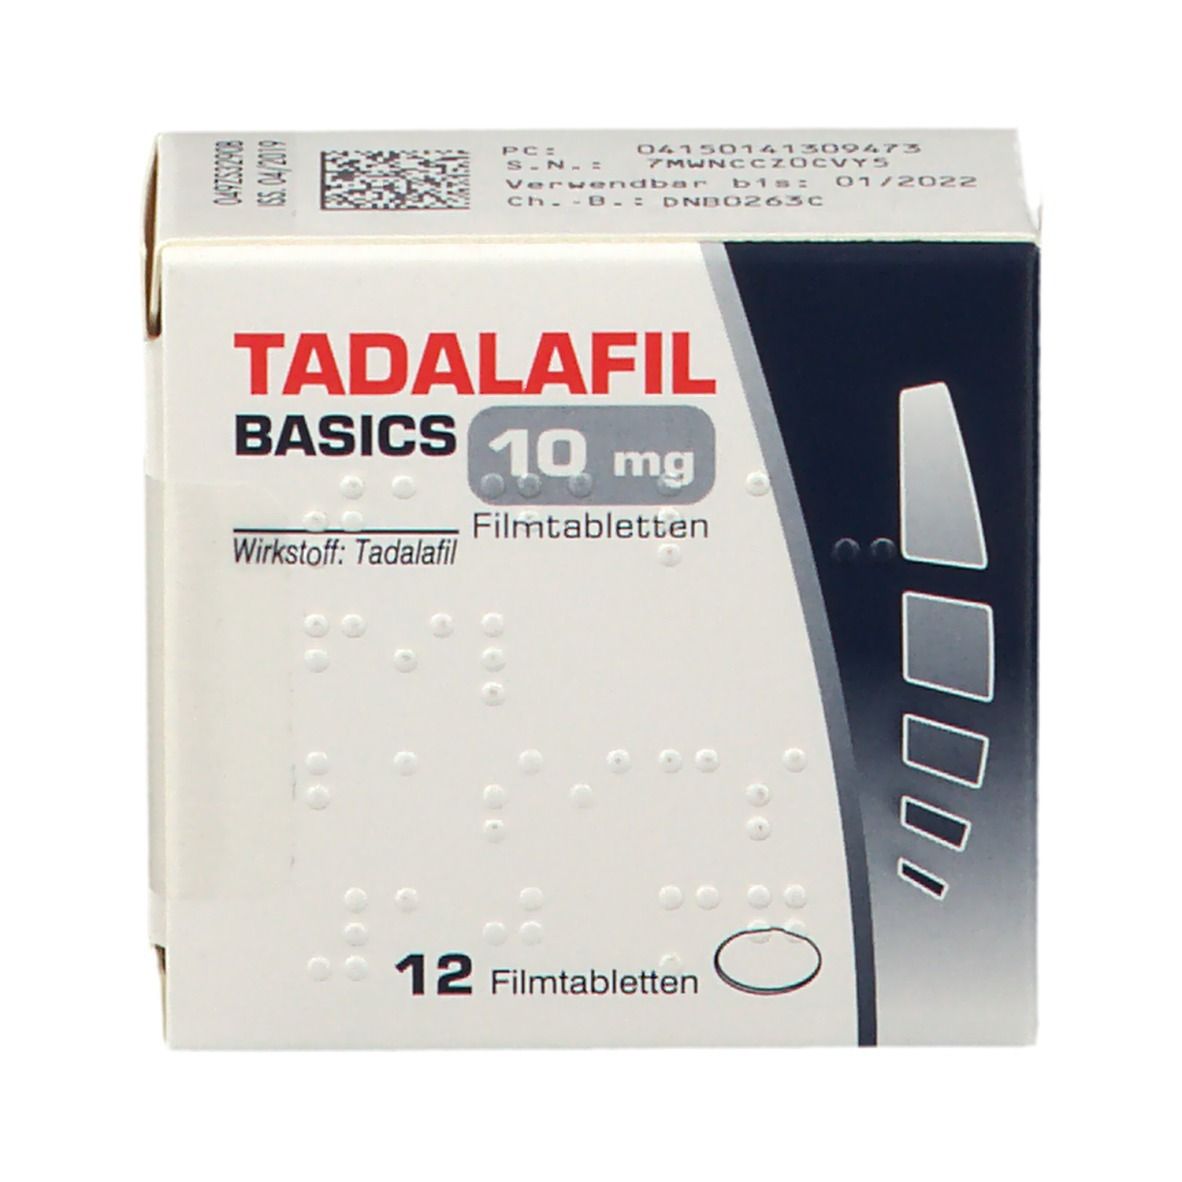 TADALAFIL BASICS 10 mg